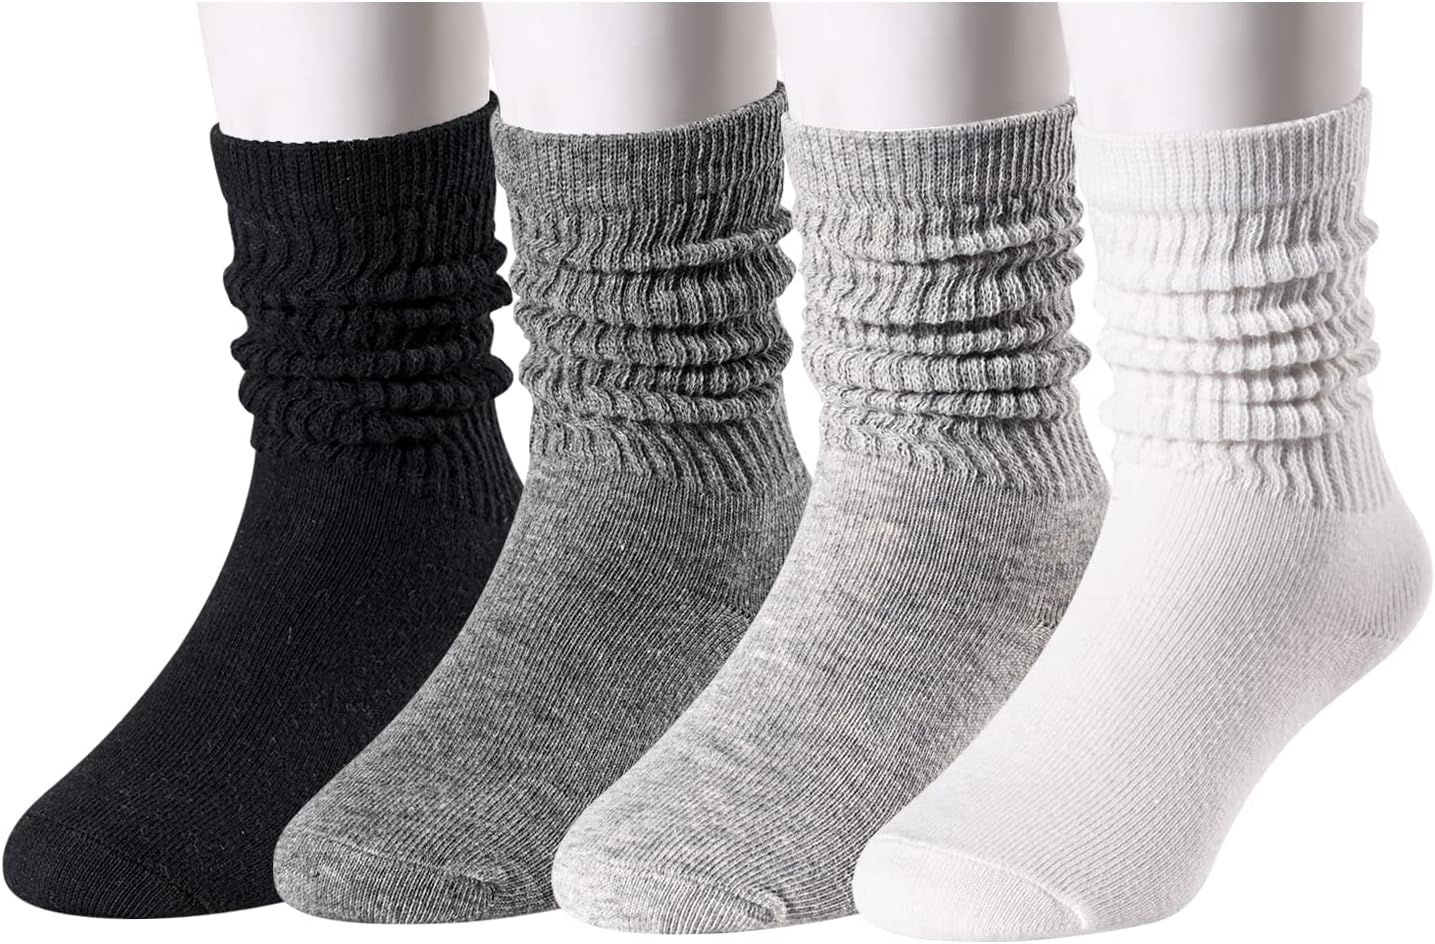 Zmart Little Girls Slouch Boots Socks 4 Pack, Toddler Girls Long Socks Kids 1-8 Years | Amazon (US)